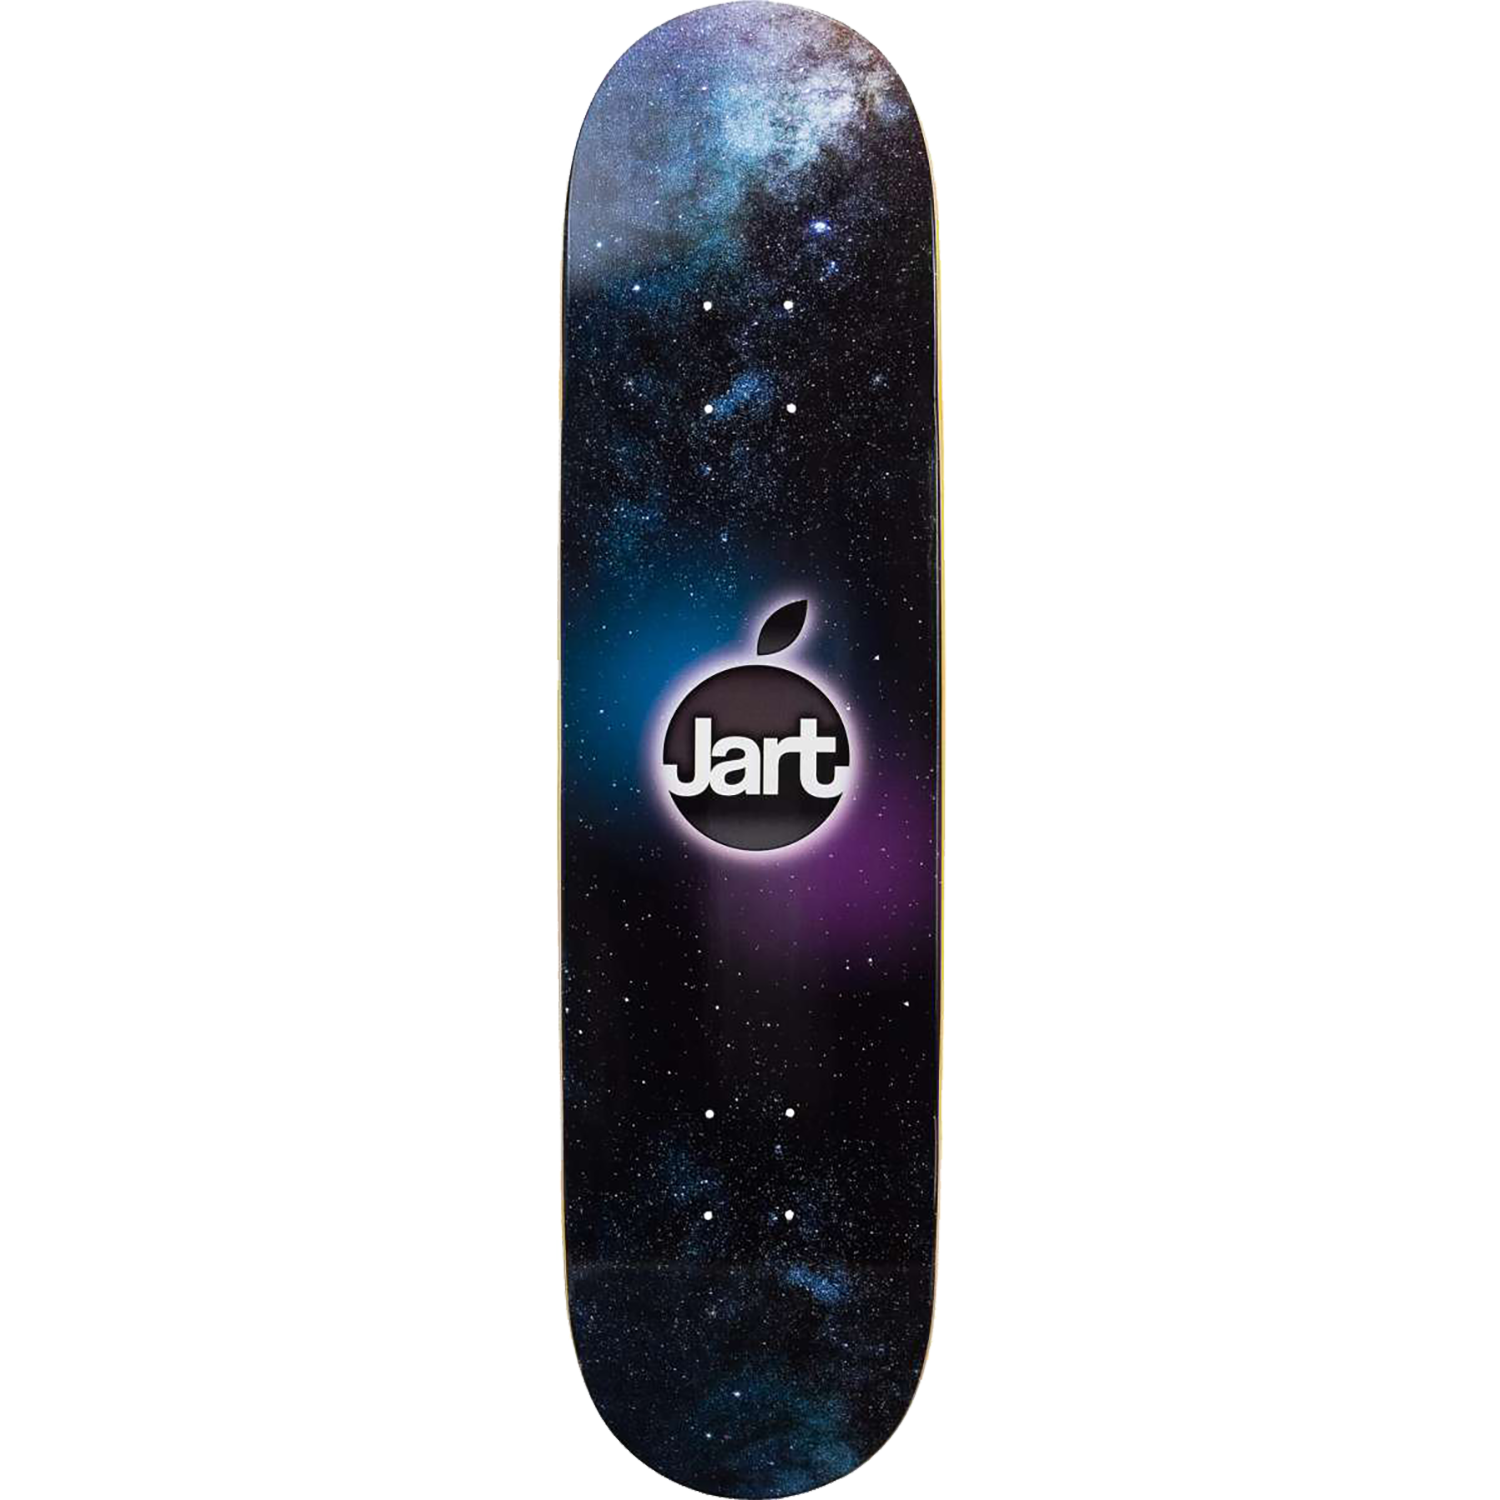 Jart Orange Skateboard Deck -7.87 DECK ONLY